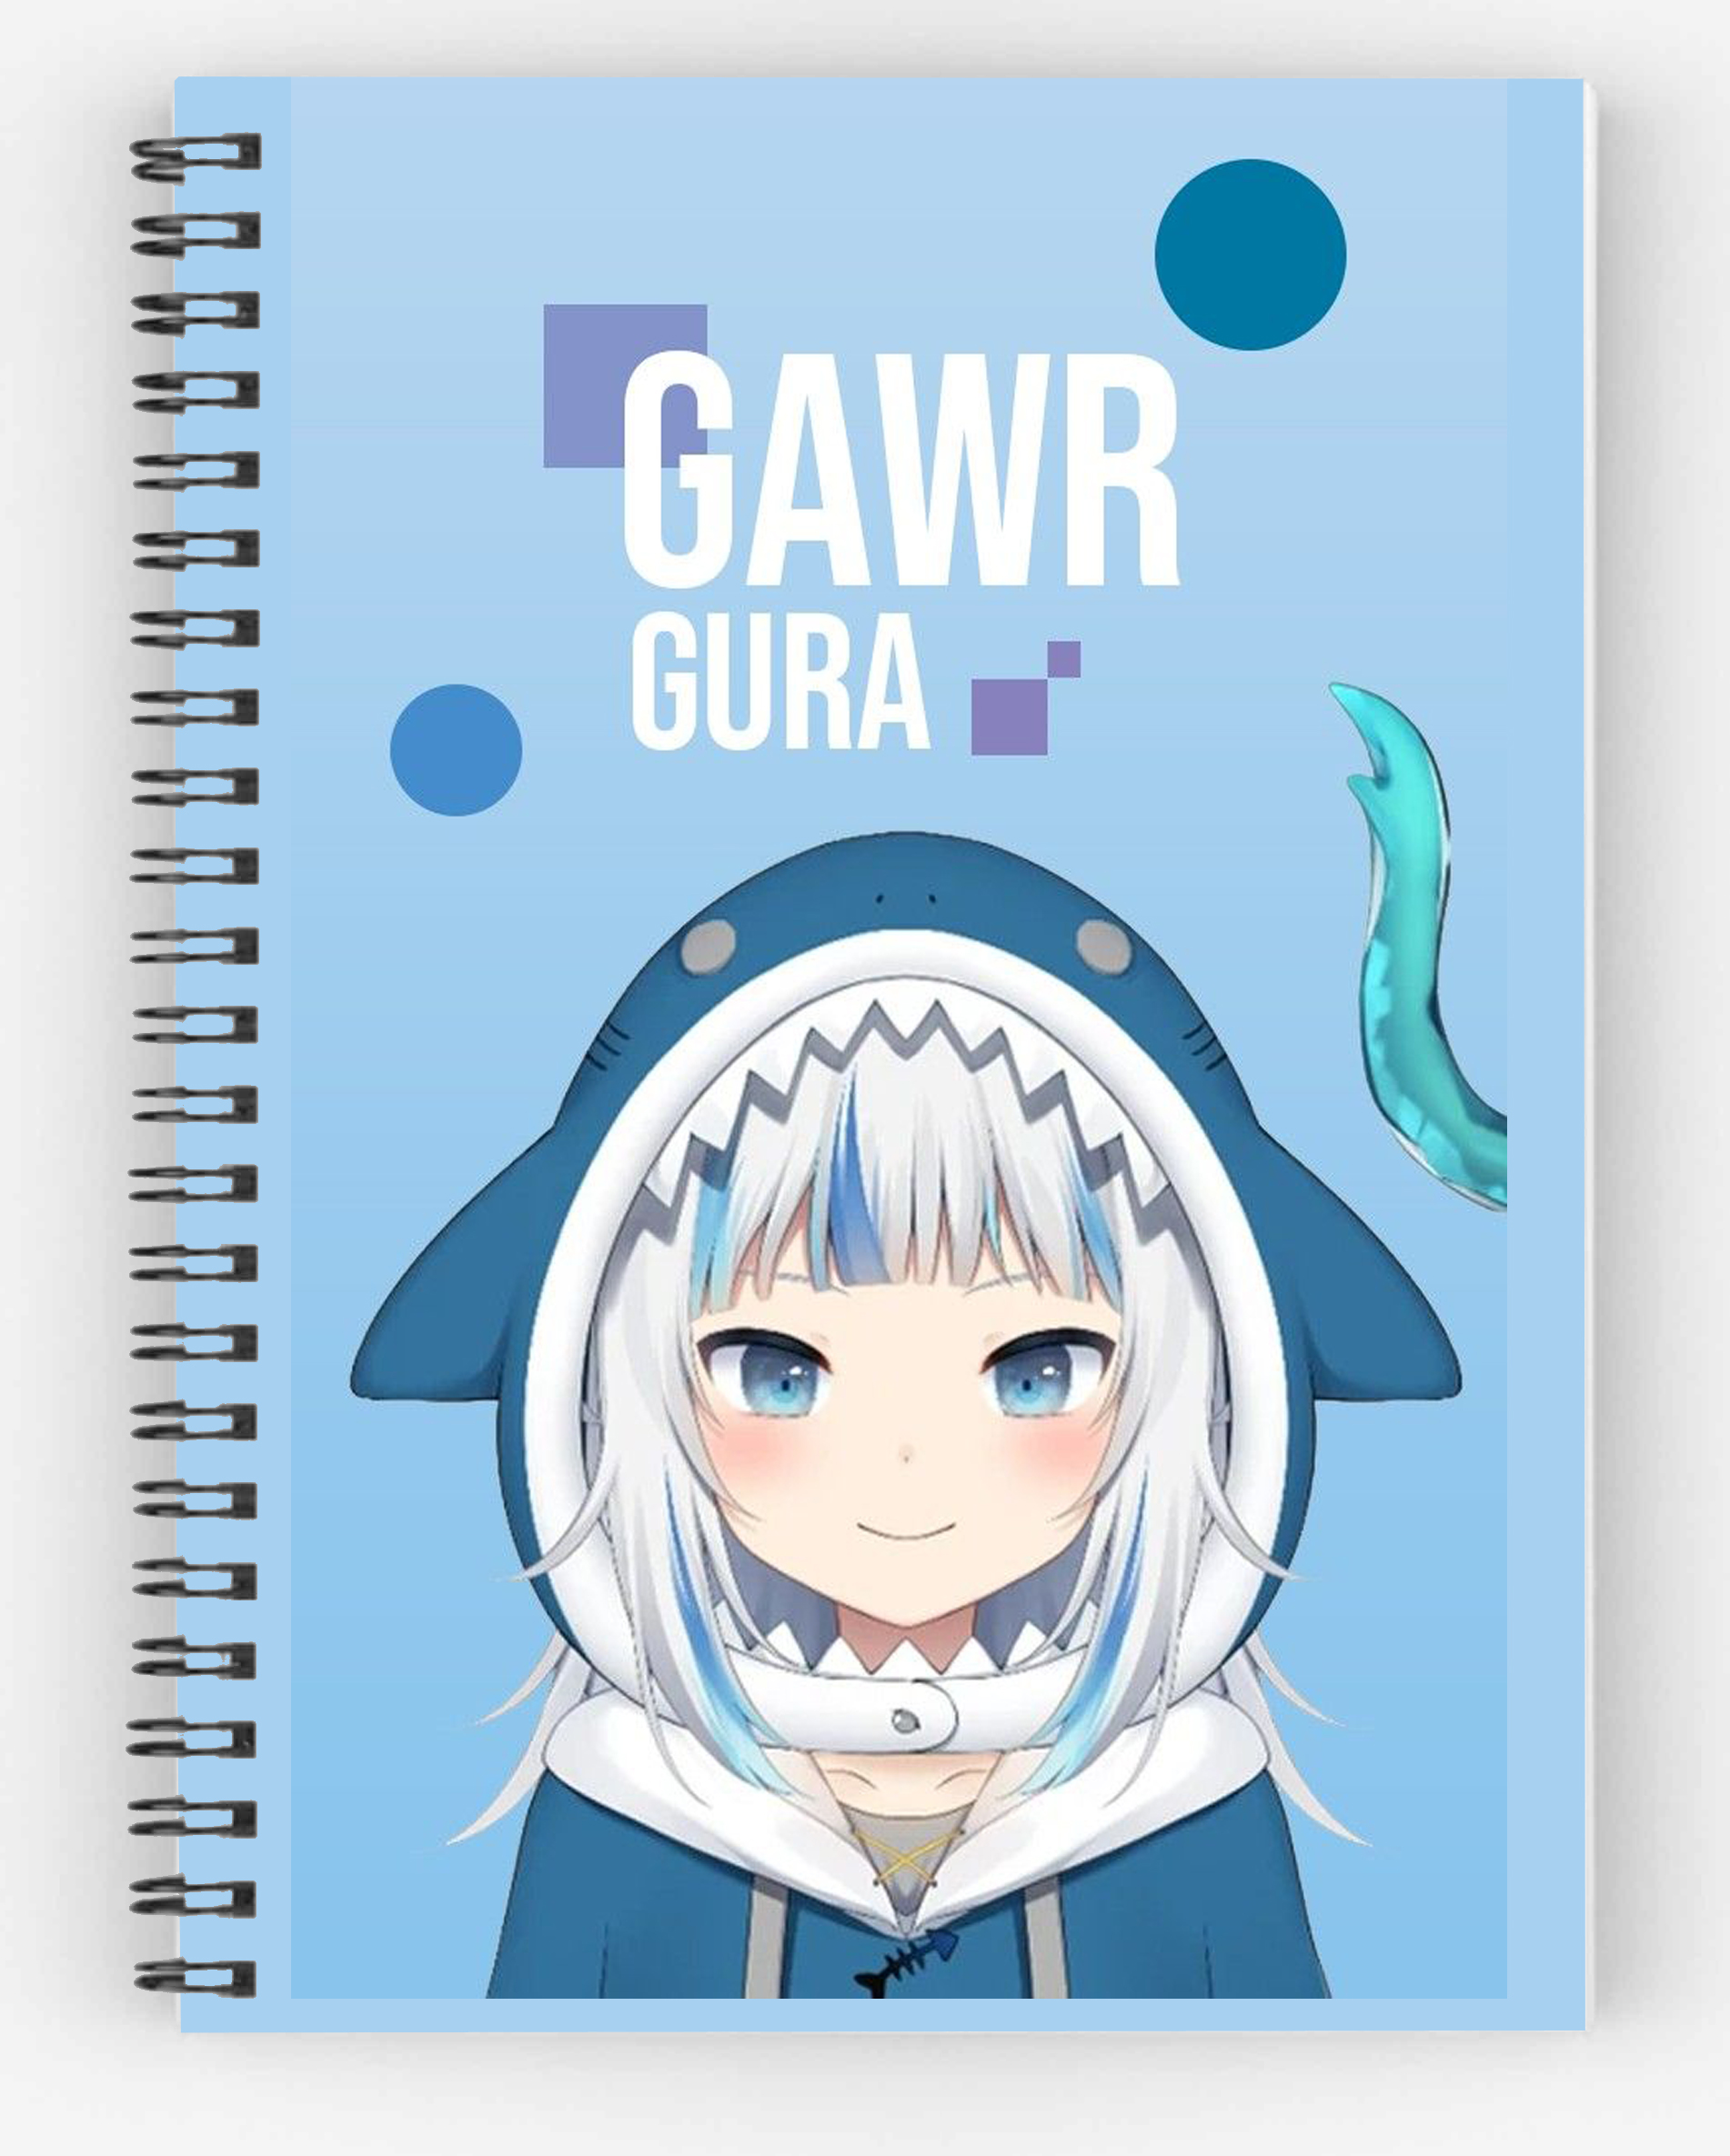 Sổ tay anime manga Gawr Gura Hololive: Sổ tay anime manga Gawr Gura Hololive xinh xắn sẽ giúp bạn theo dõi kế hoạch và ghi chú những suy nghĩ của mình một cách dễ dàng và đáng yêu. Đừng bỏ lỡ cơ hội sở hữu sản phẩm này!